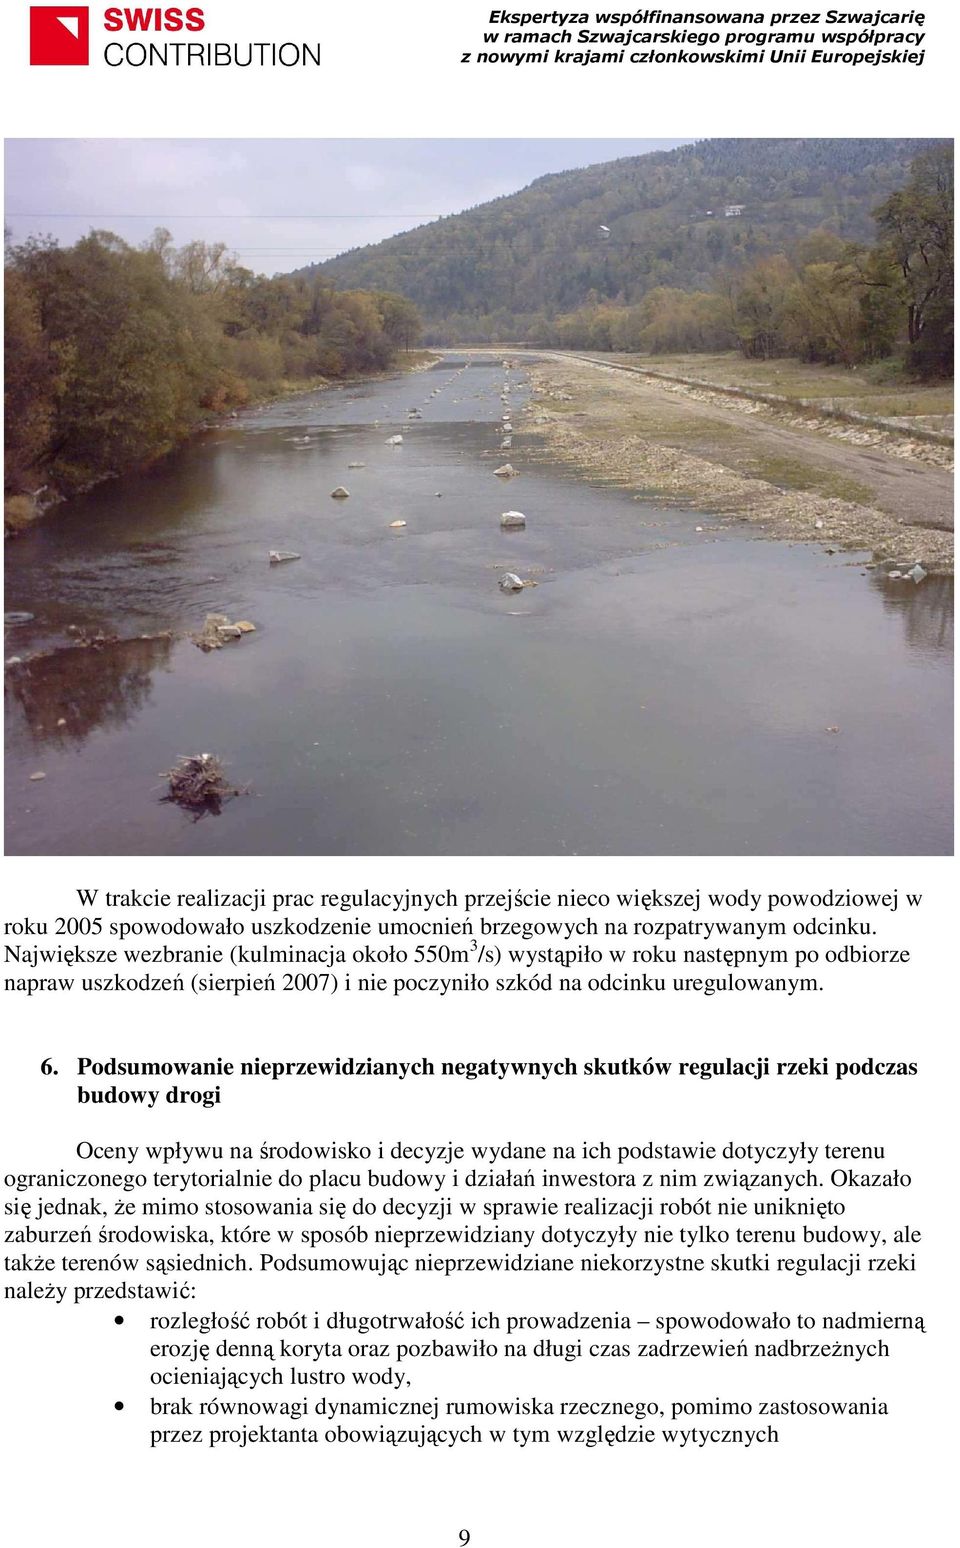 Podsumowanie nieprzewidzianych negatywnych skutków regulacji rzeki podczas budowy drogi Oceny wpływu na środowisko i decyzje wydane na ich podstawie dotyczyły terenu ograniczonego terytorialnie do